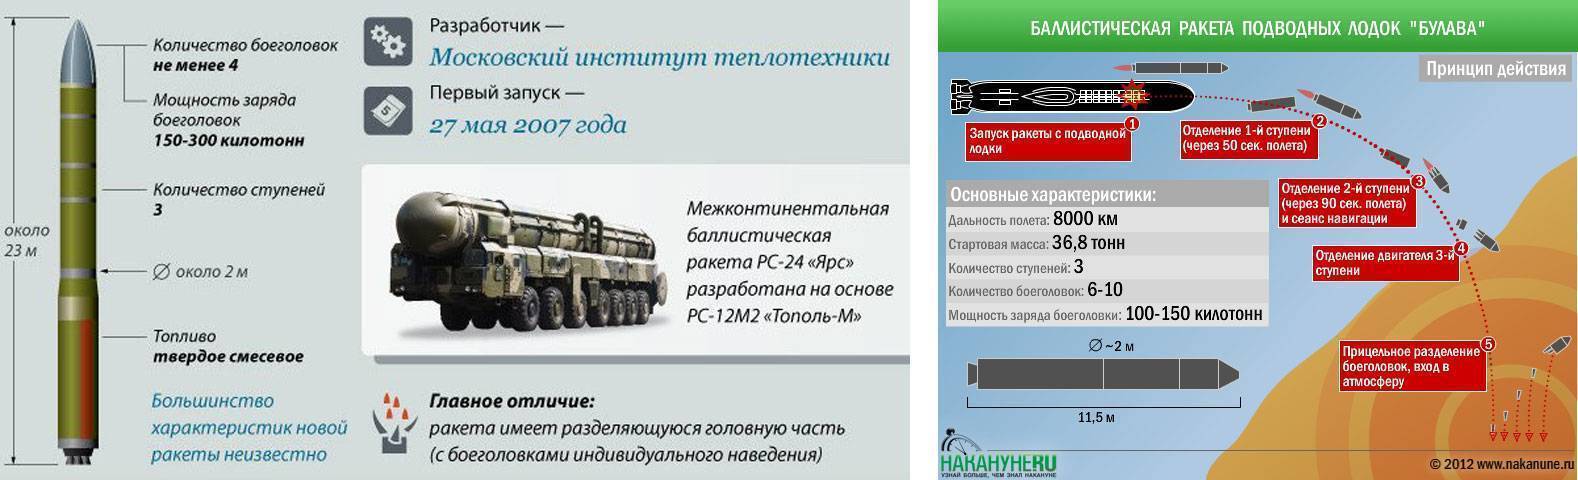 Мбр «тополь-м»: конструкторы, история испытаний и ттх - big-army.ru